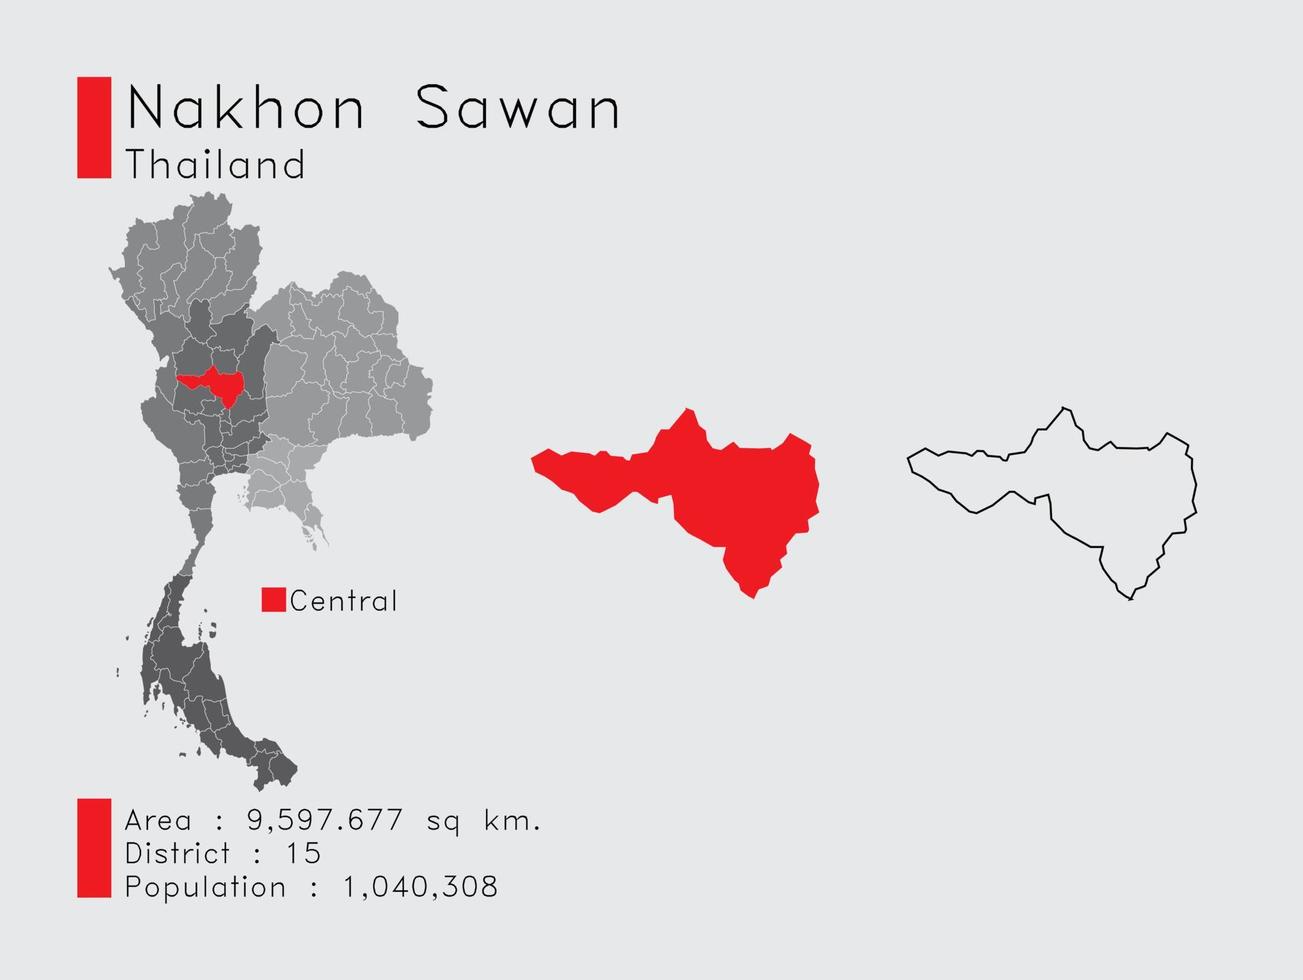 nakhon sawan position in thailand eine reihe von infografikelementen für die provinz. und Bereich Bezirk Bevölkerung und Gliederung. Vektor mit grauem Hintergrund.